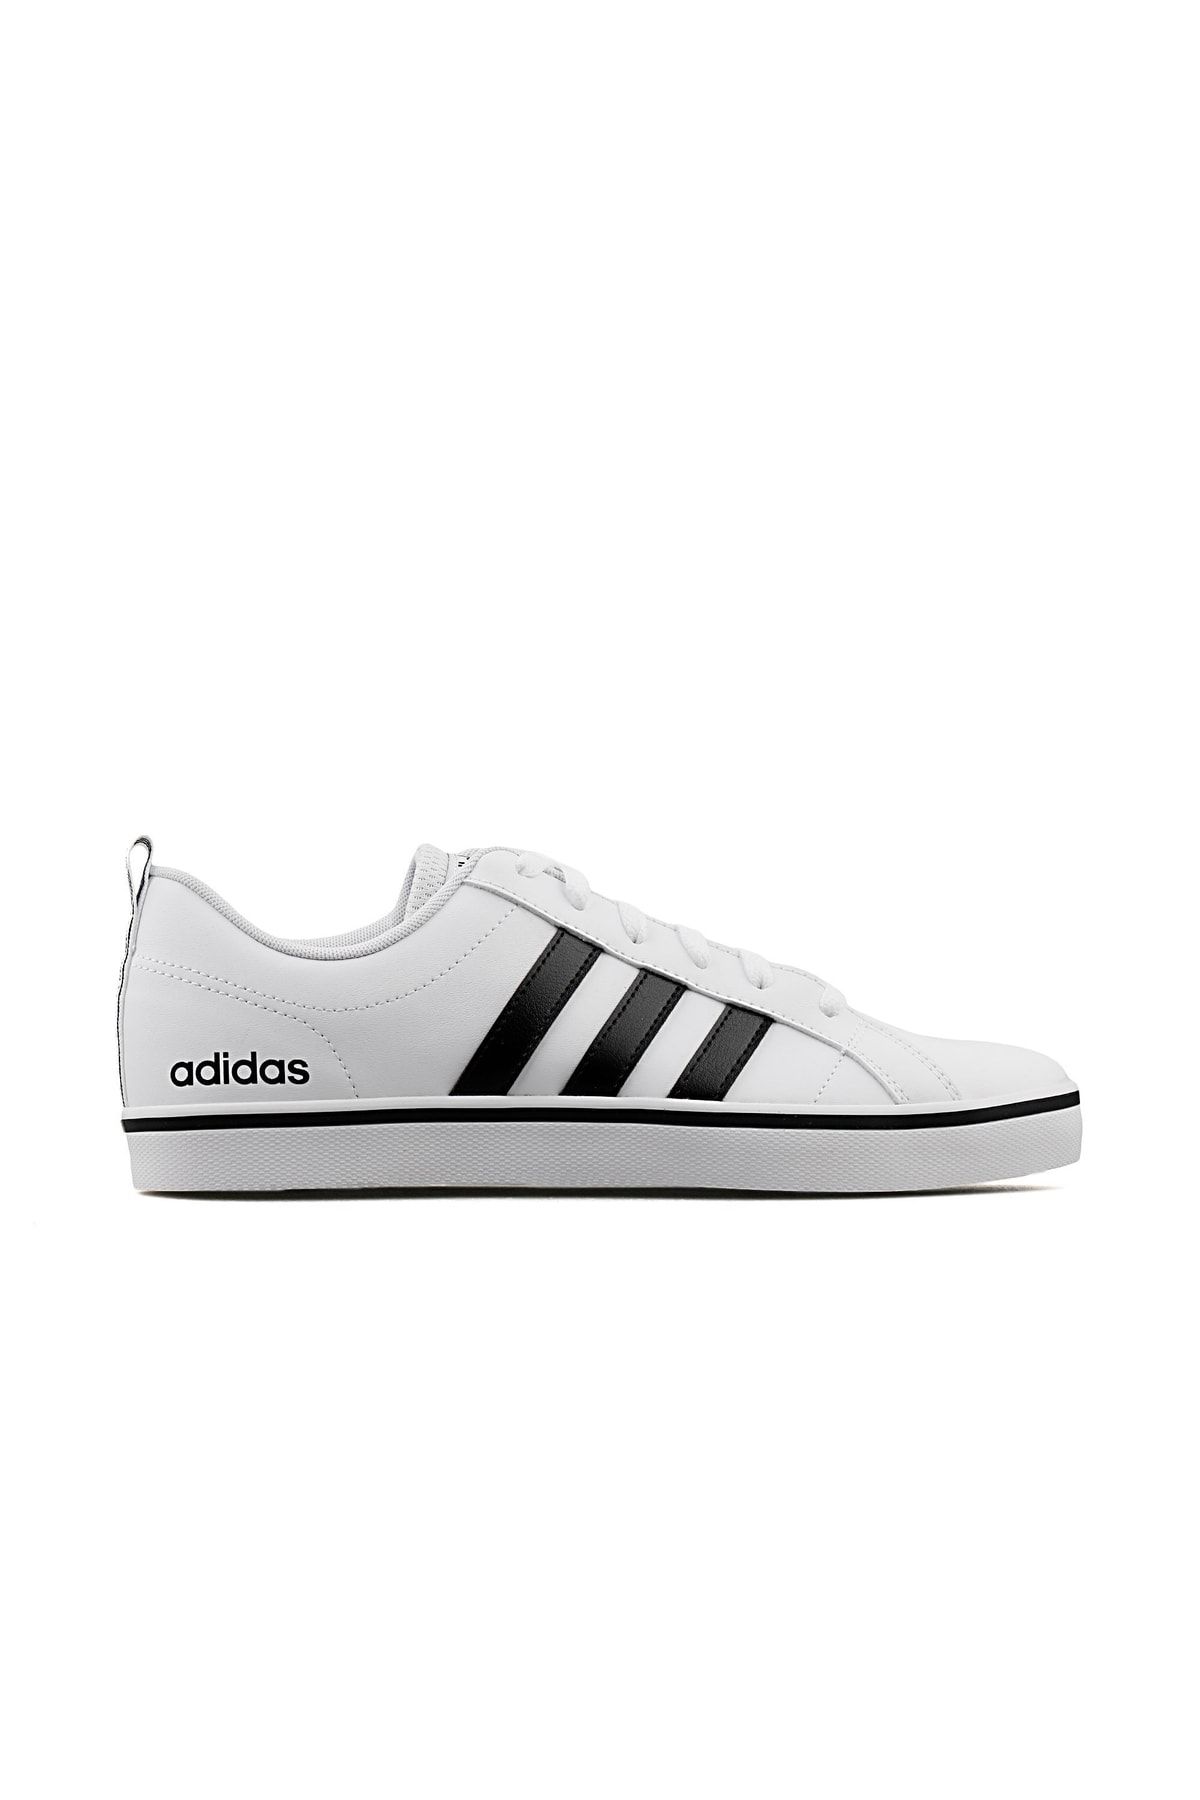 adidas Vs Pace Erkek Günlük Ayakkabı Fy8558 Beyaz